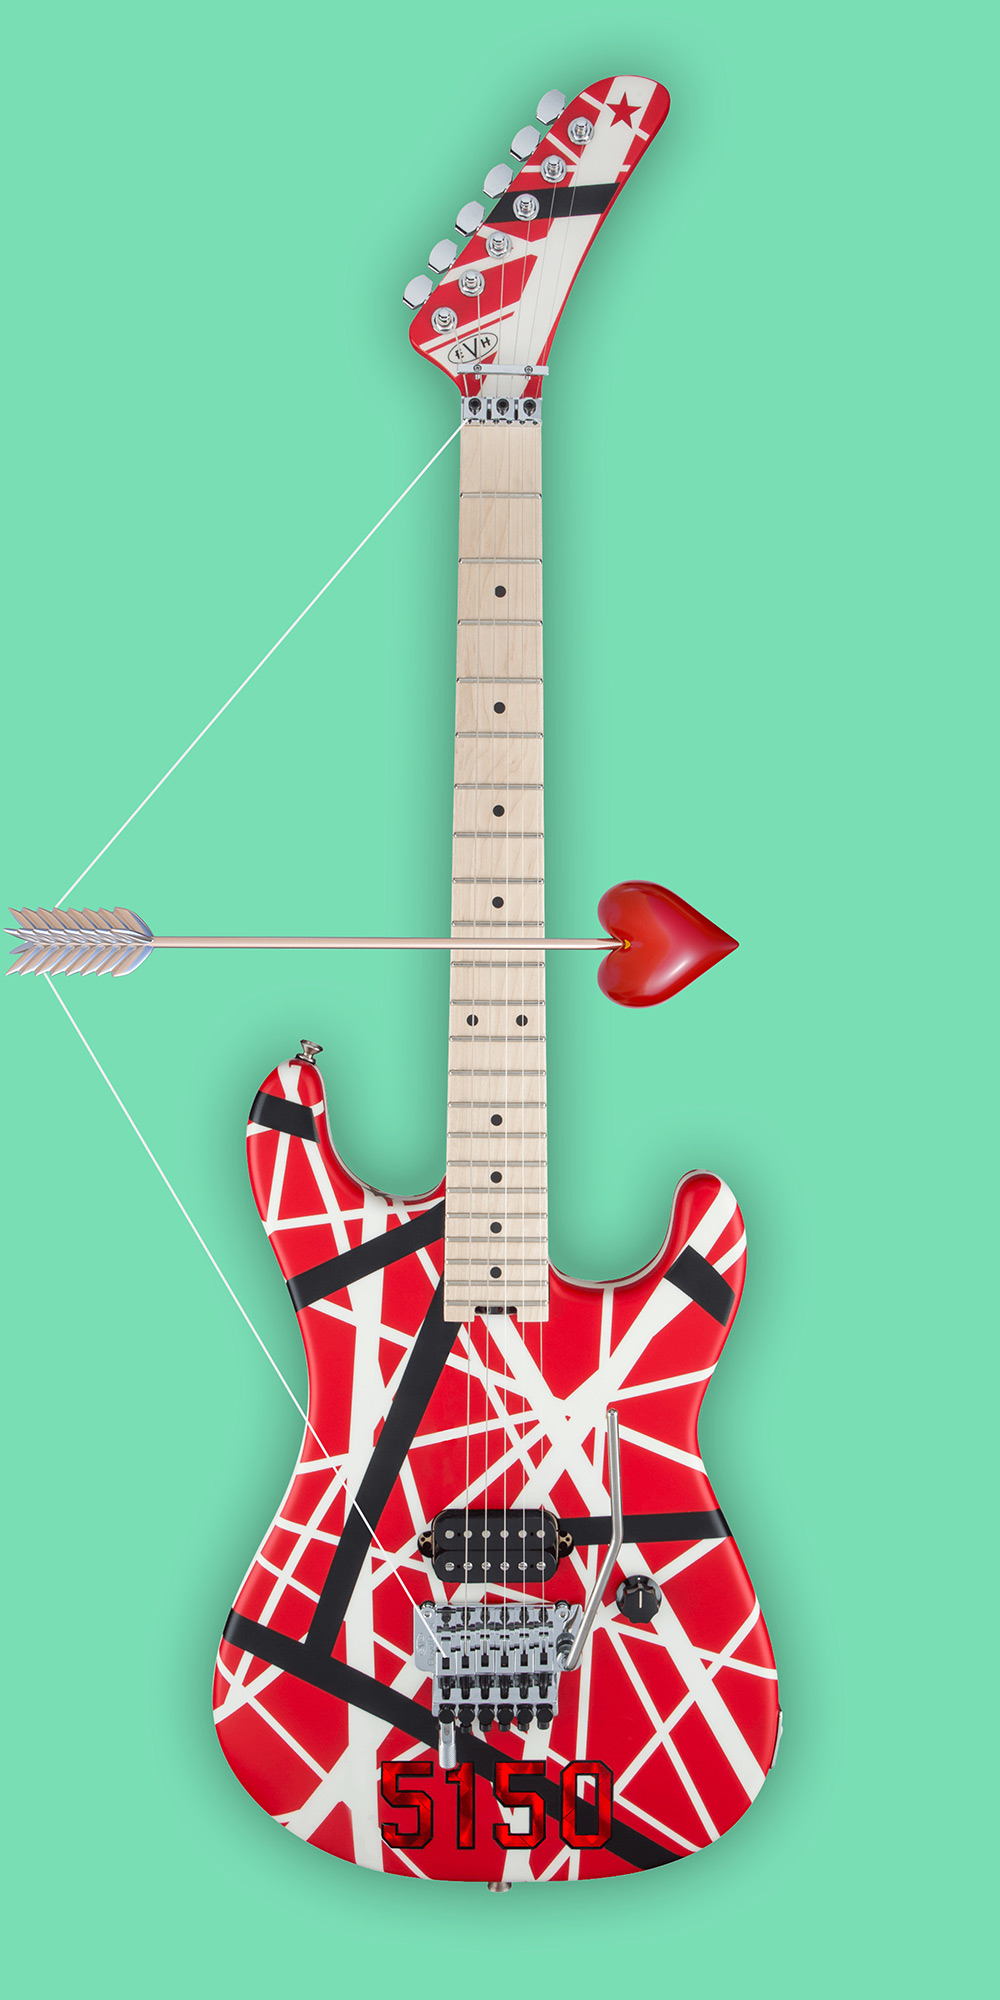 Jeff Kern design for "Eddie Van Halen"